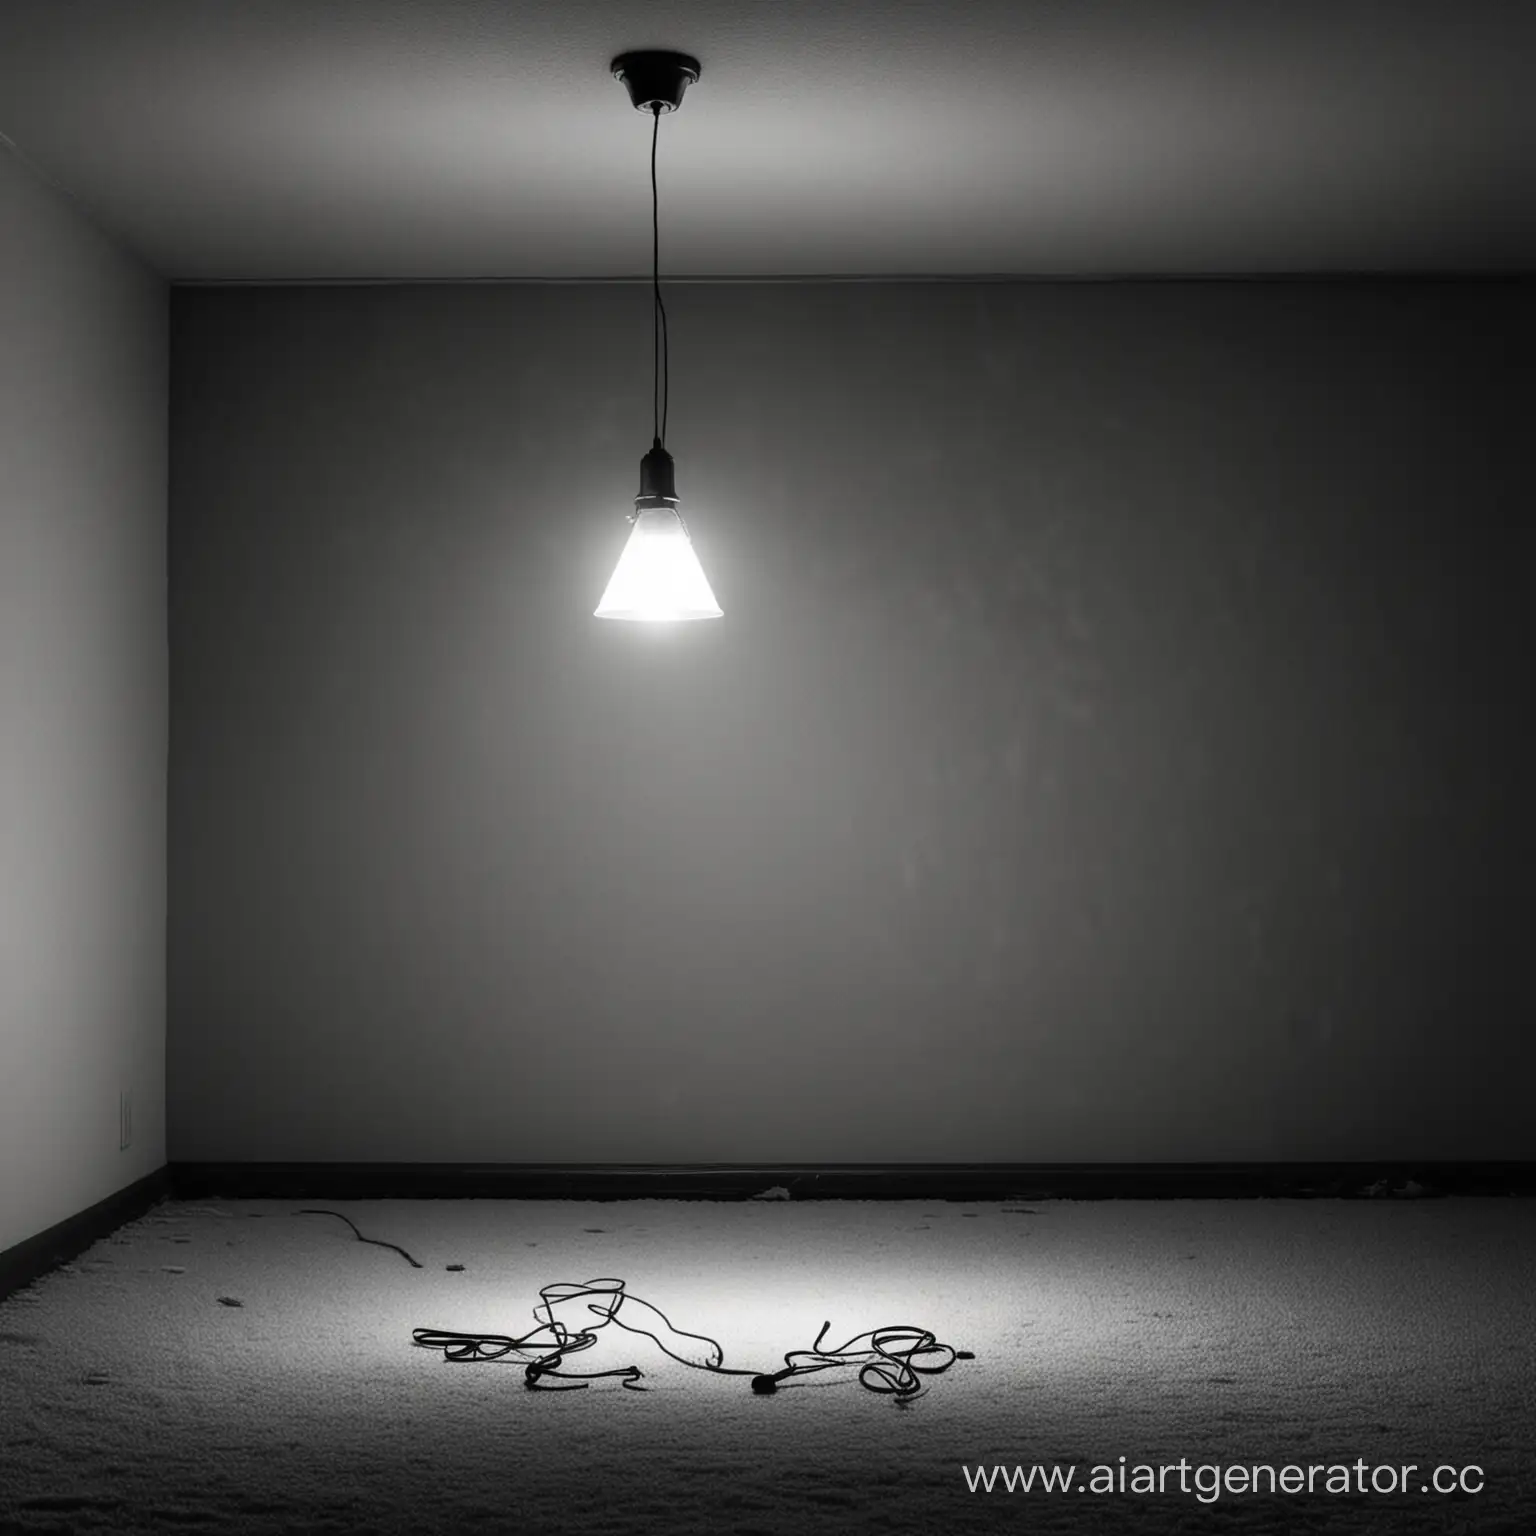 Обложка для грустного трека про любовь, темная комната в которой весит одна лампа которая светит белым без надписей 
2000x2000 пиксилей